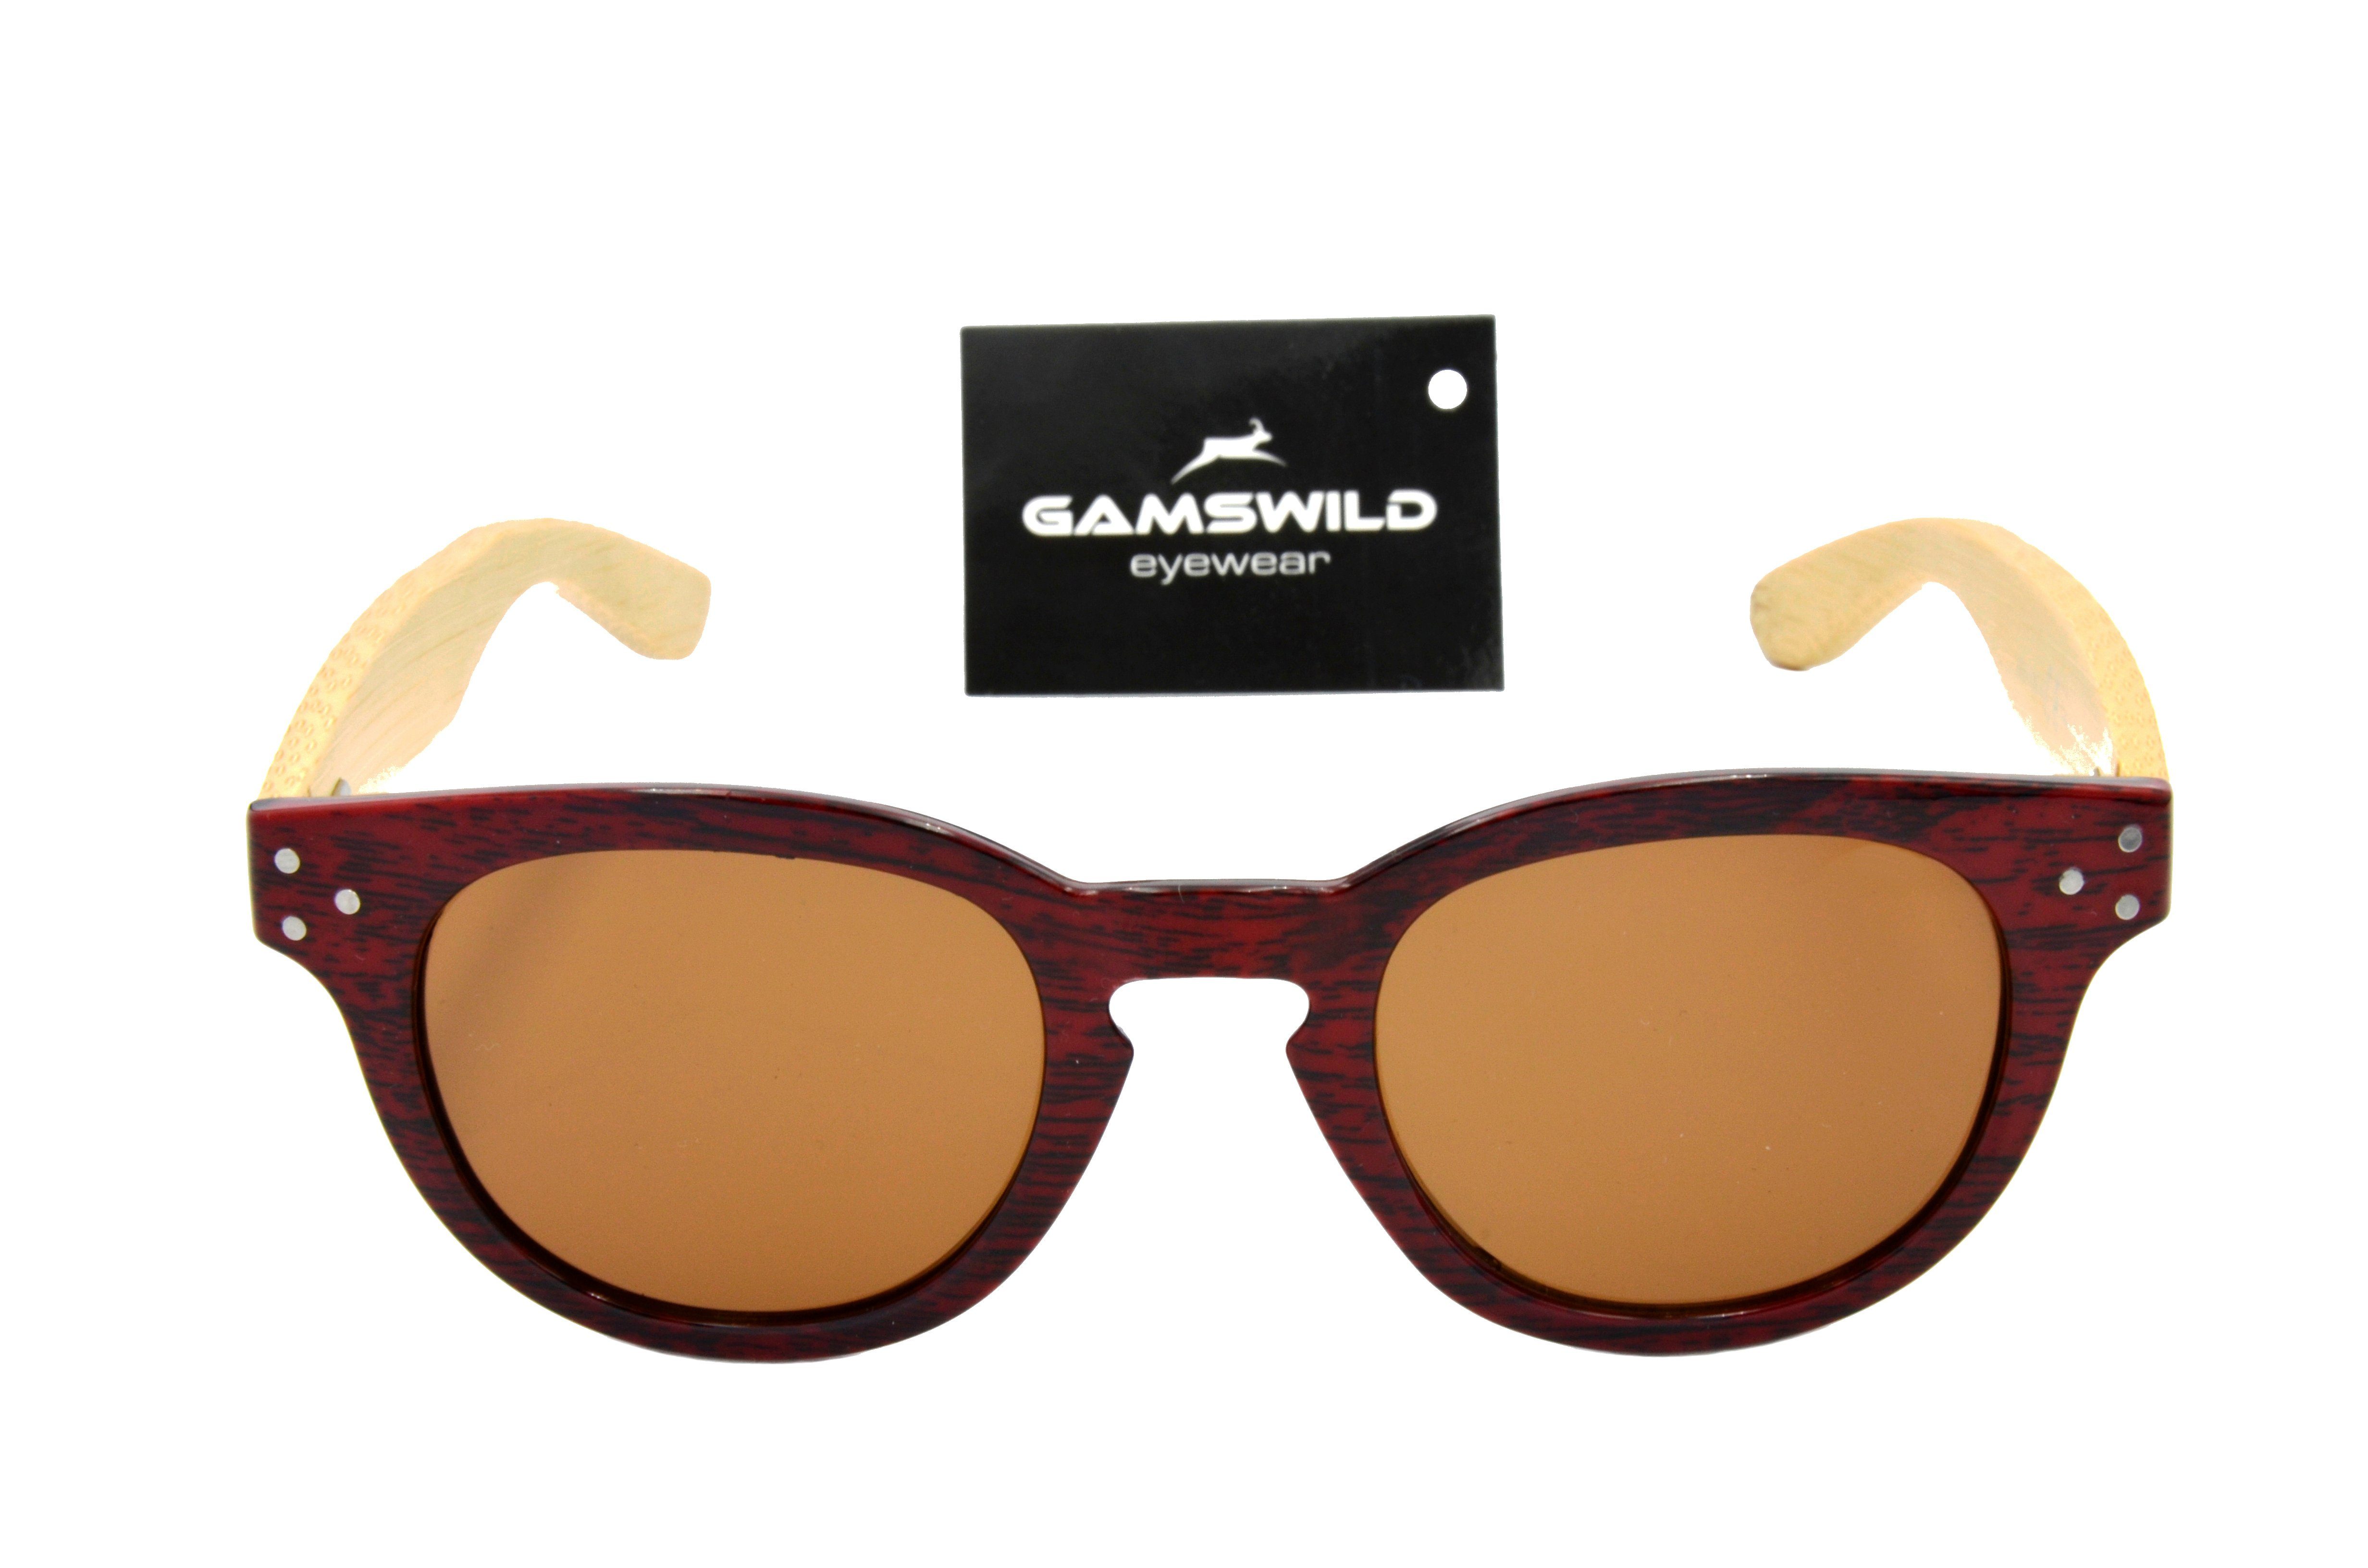 Gamswild Sonnenbrille WM1428 GAMSSTYLE Modebrille Fassung Damen, dunkelbraun rot-braun, Bambusholzbügel/ blau, Holzoptik